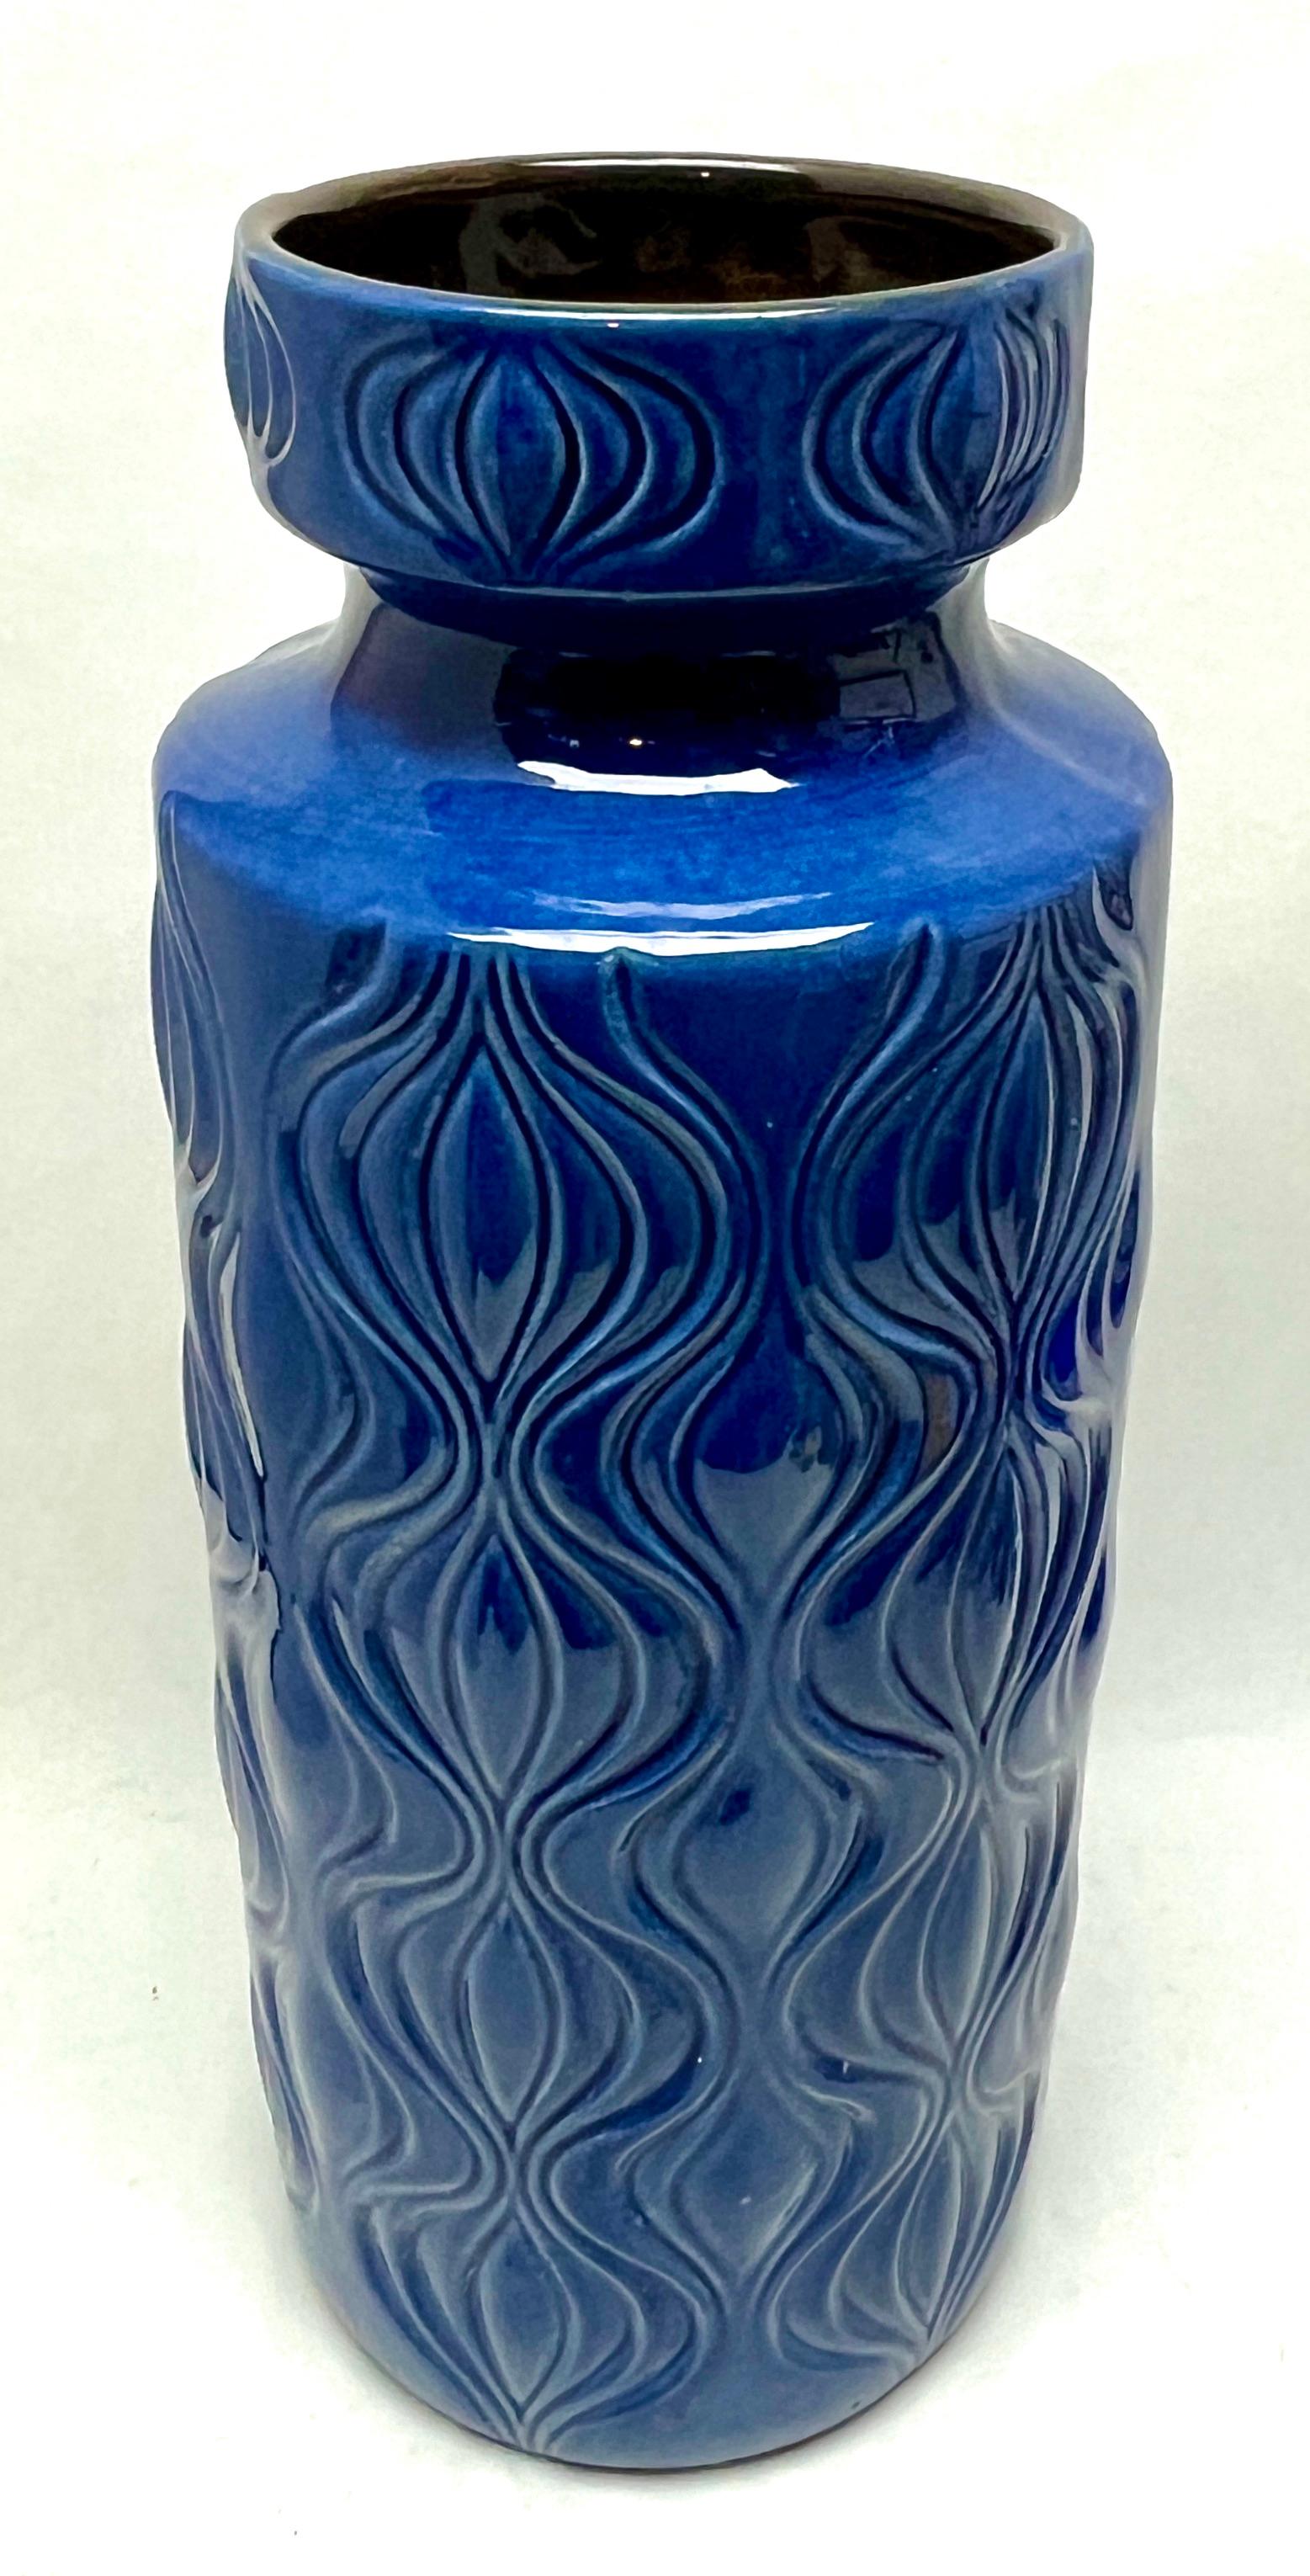 Vase à poser 'Amsterdam' 'Scheurich, Blue Model 285-40' W-Allemagne, années 1960

Satiné bleu (